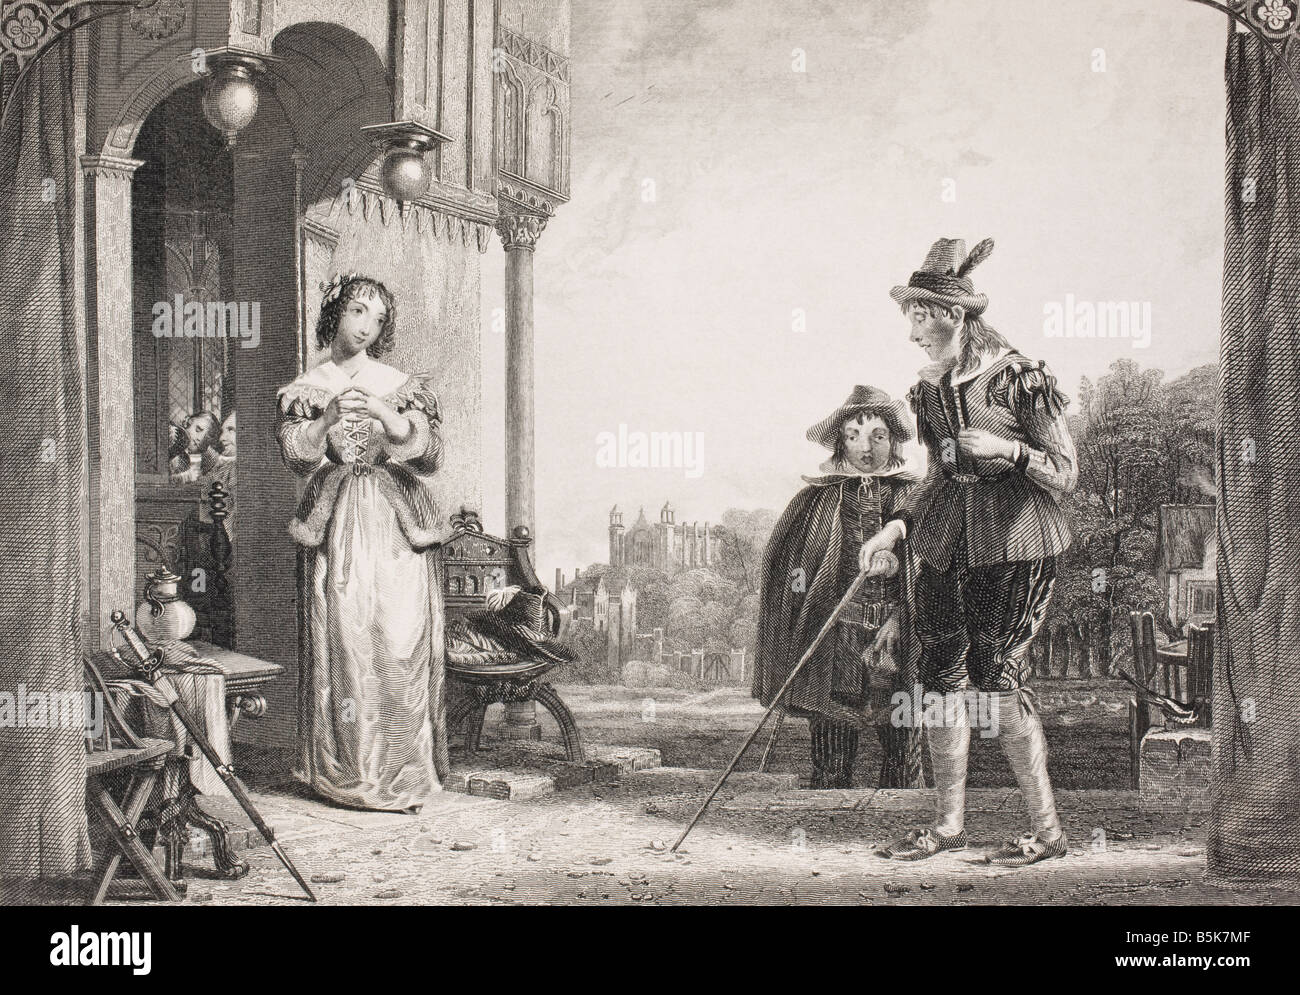 Anne Page y delgado. Escena de las Merry Wives of Windsor por William Shakespeare Foto de stock